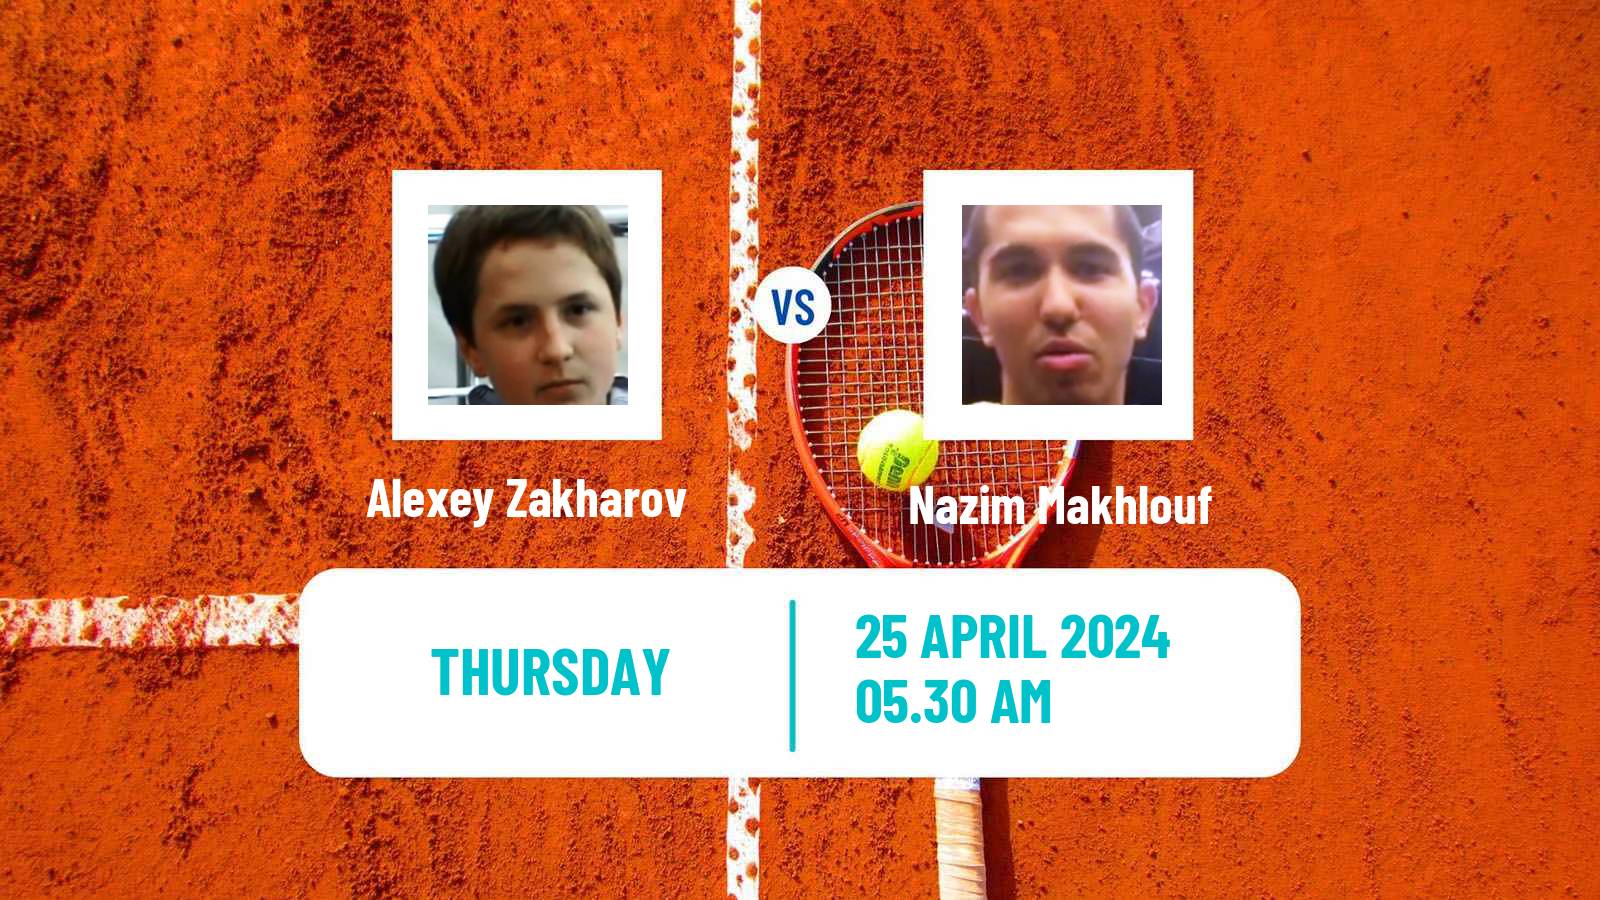 Tennis ITF M15 Monastir 17 Men Alexey Zakharov - Nazim Makhlouf